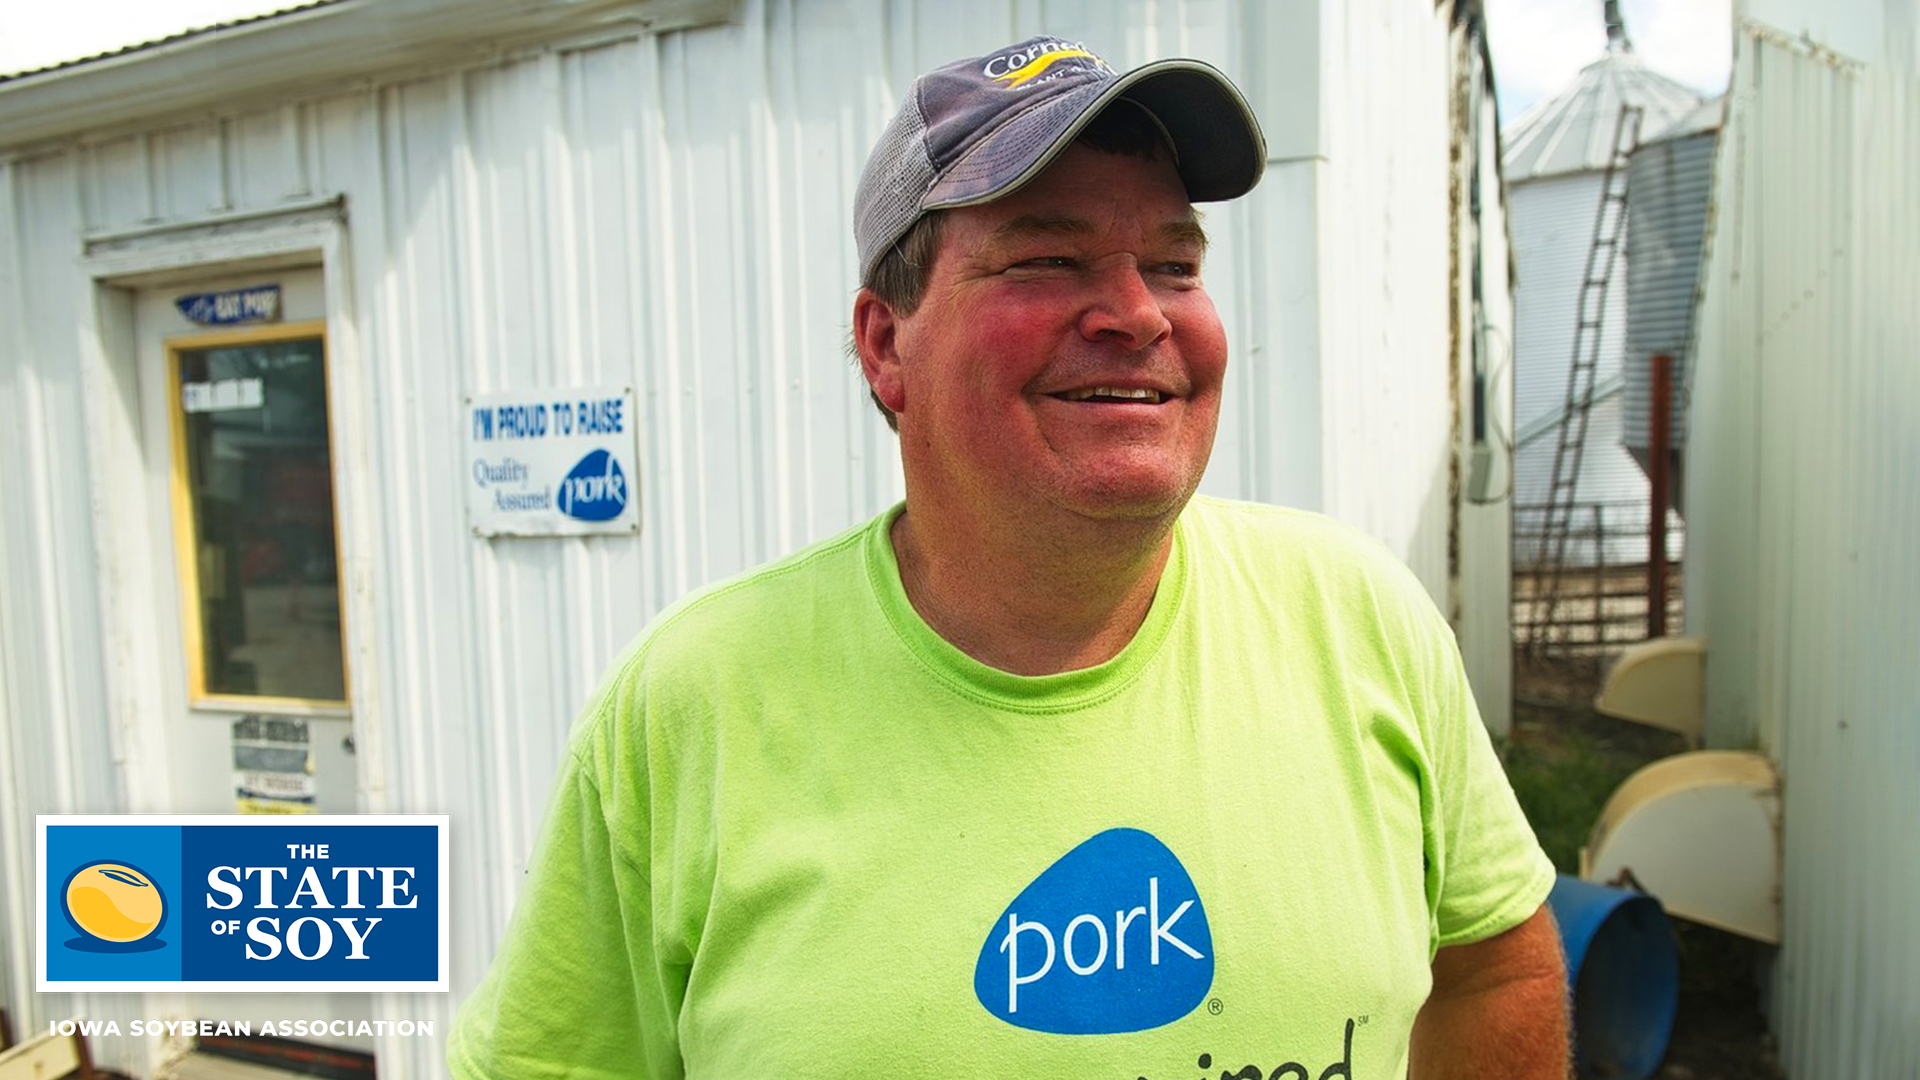 Soybean farmer in Iowa pork shirt